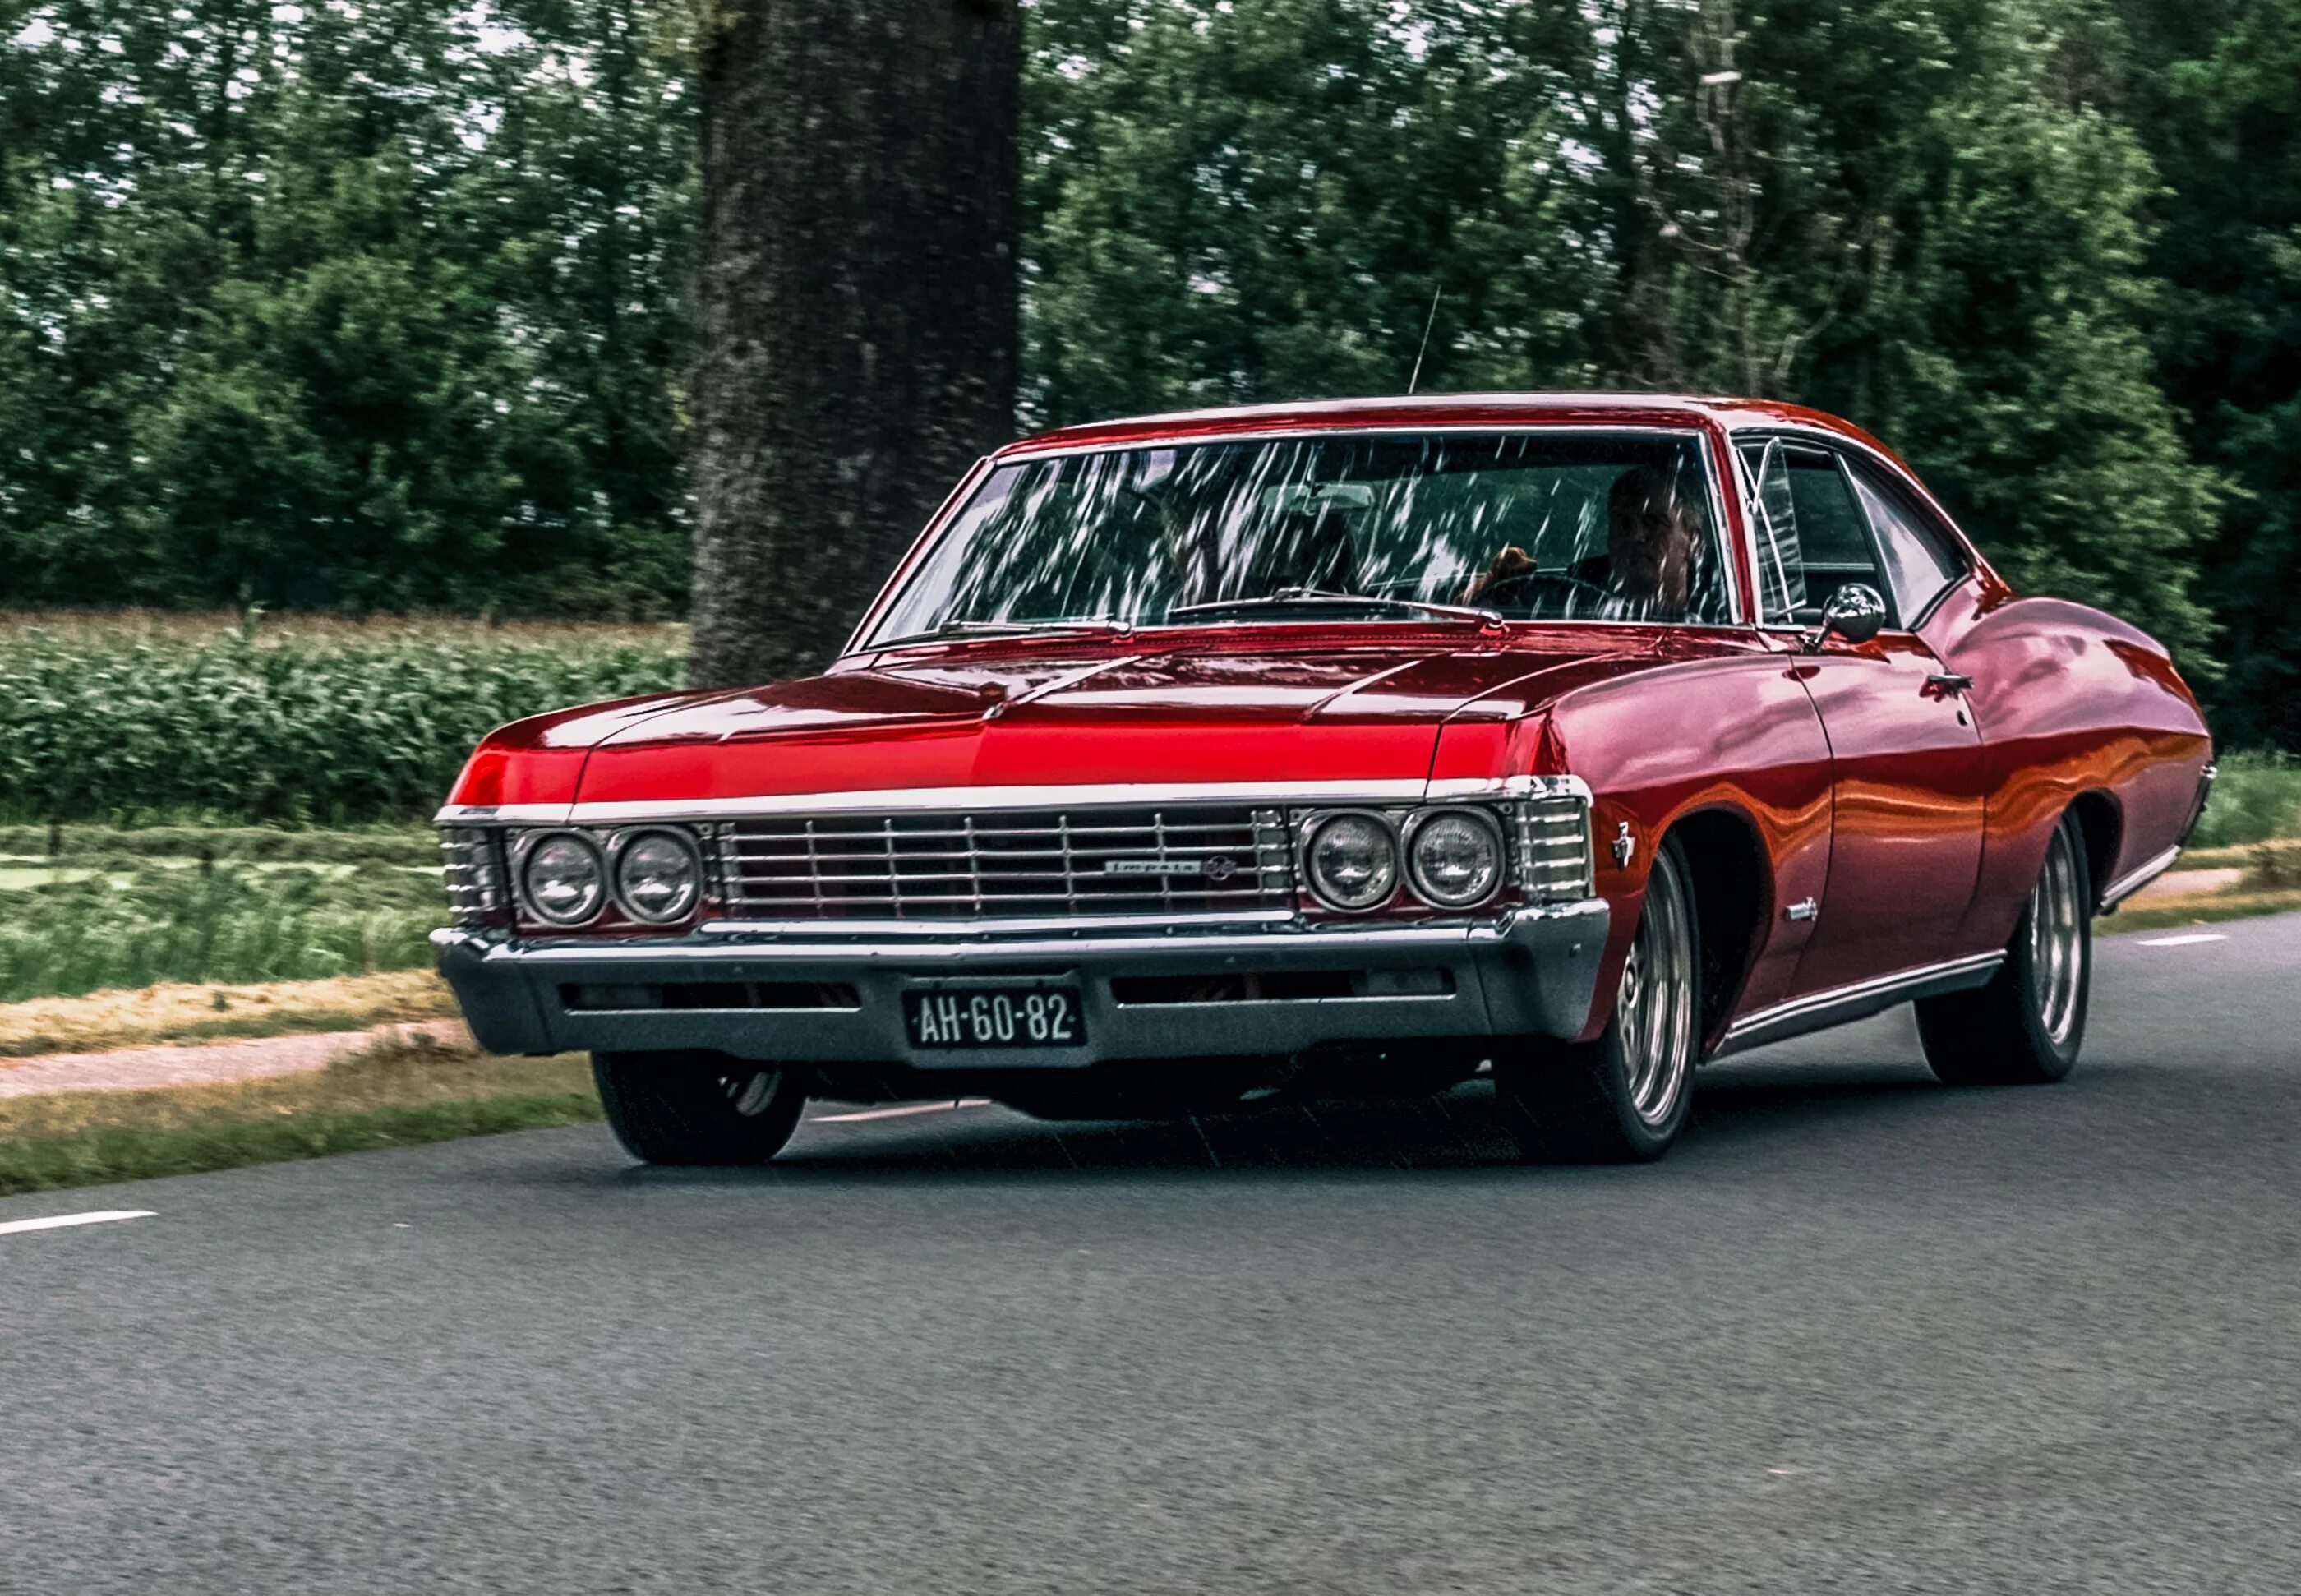 Chevrolet impala год. Шевроле Импала 1967. Chevrolet Impala SS 1967. Шевроле Импала 67. Импала 67 СС.